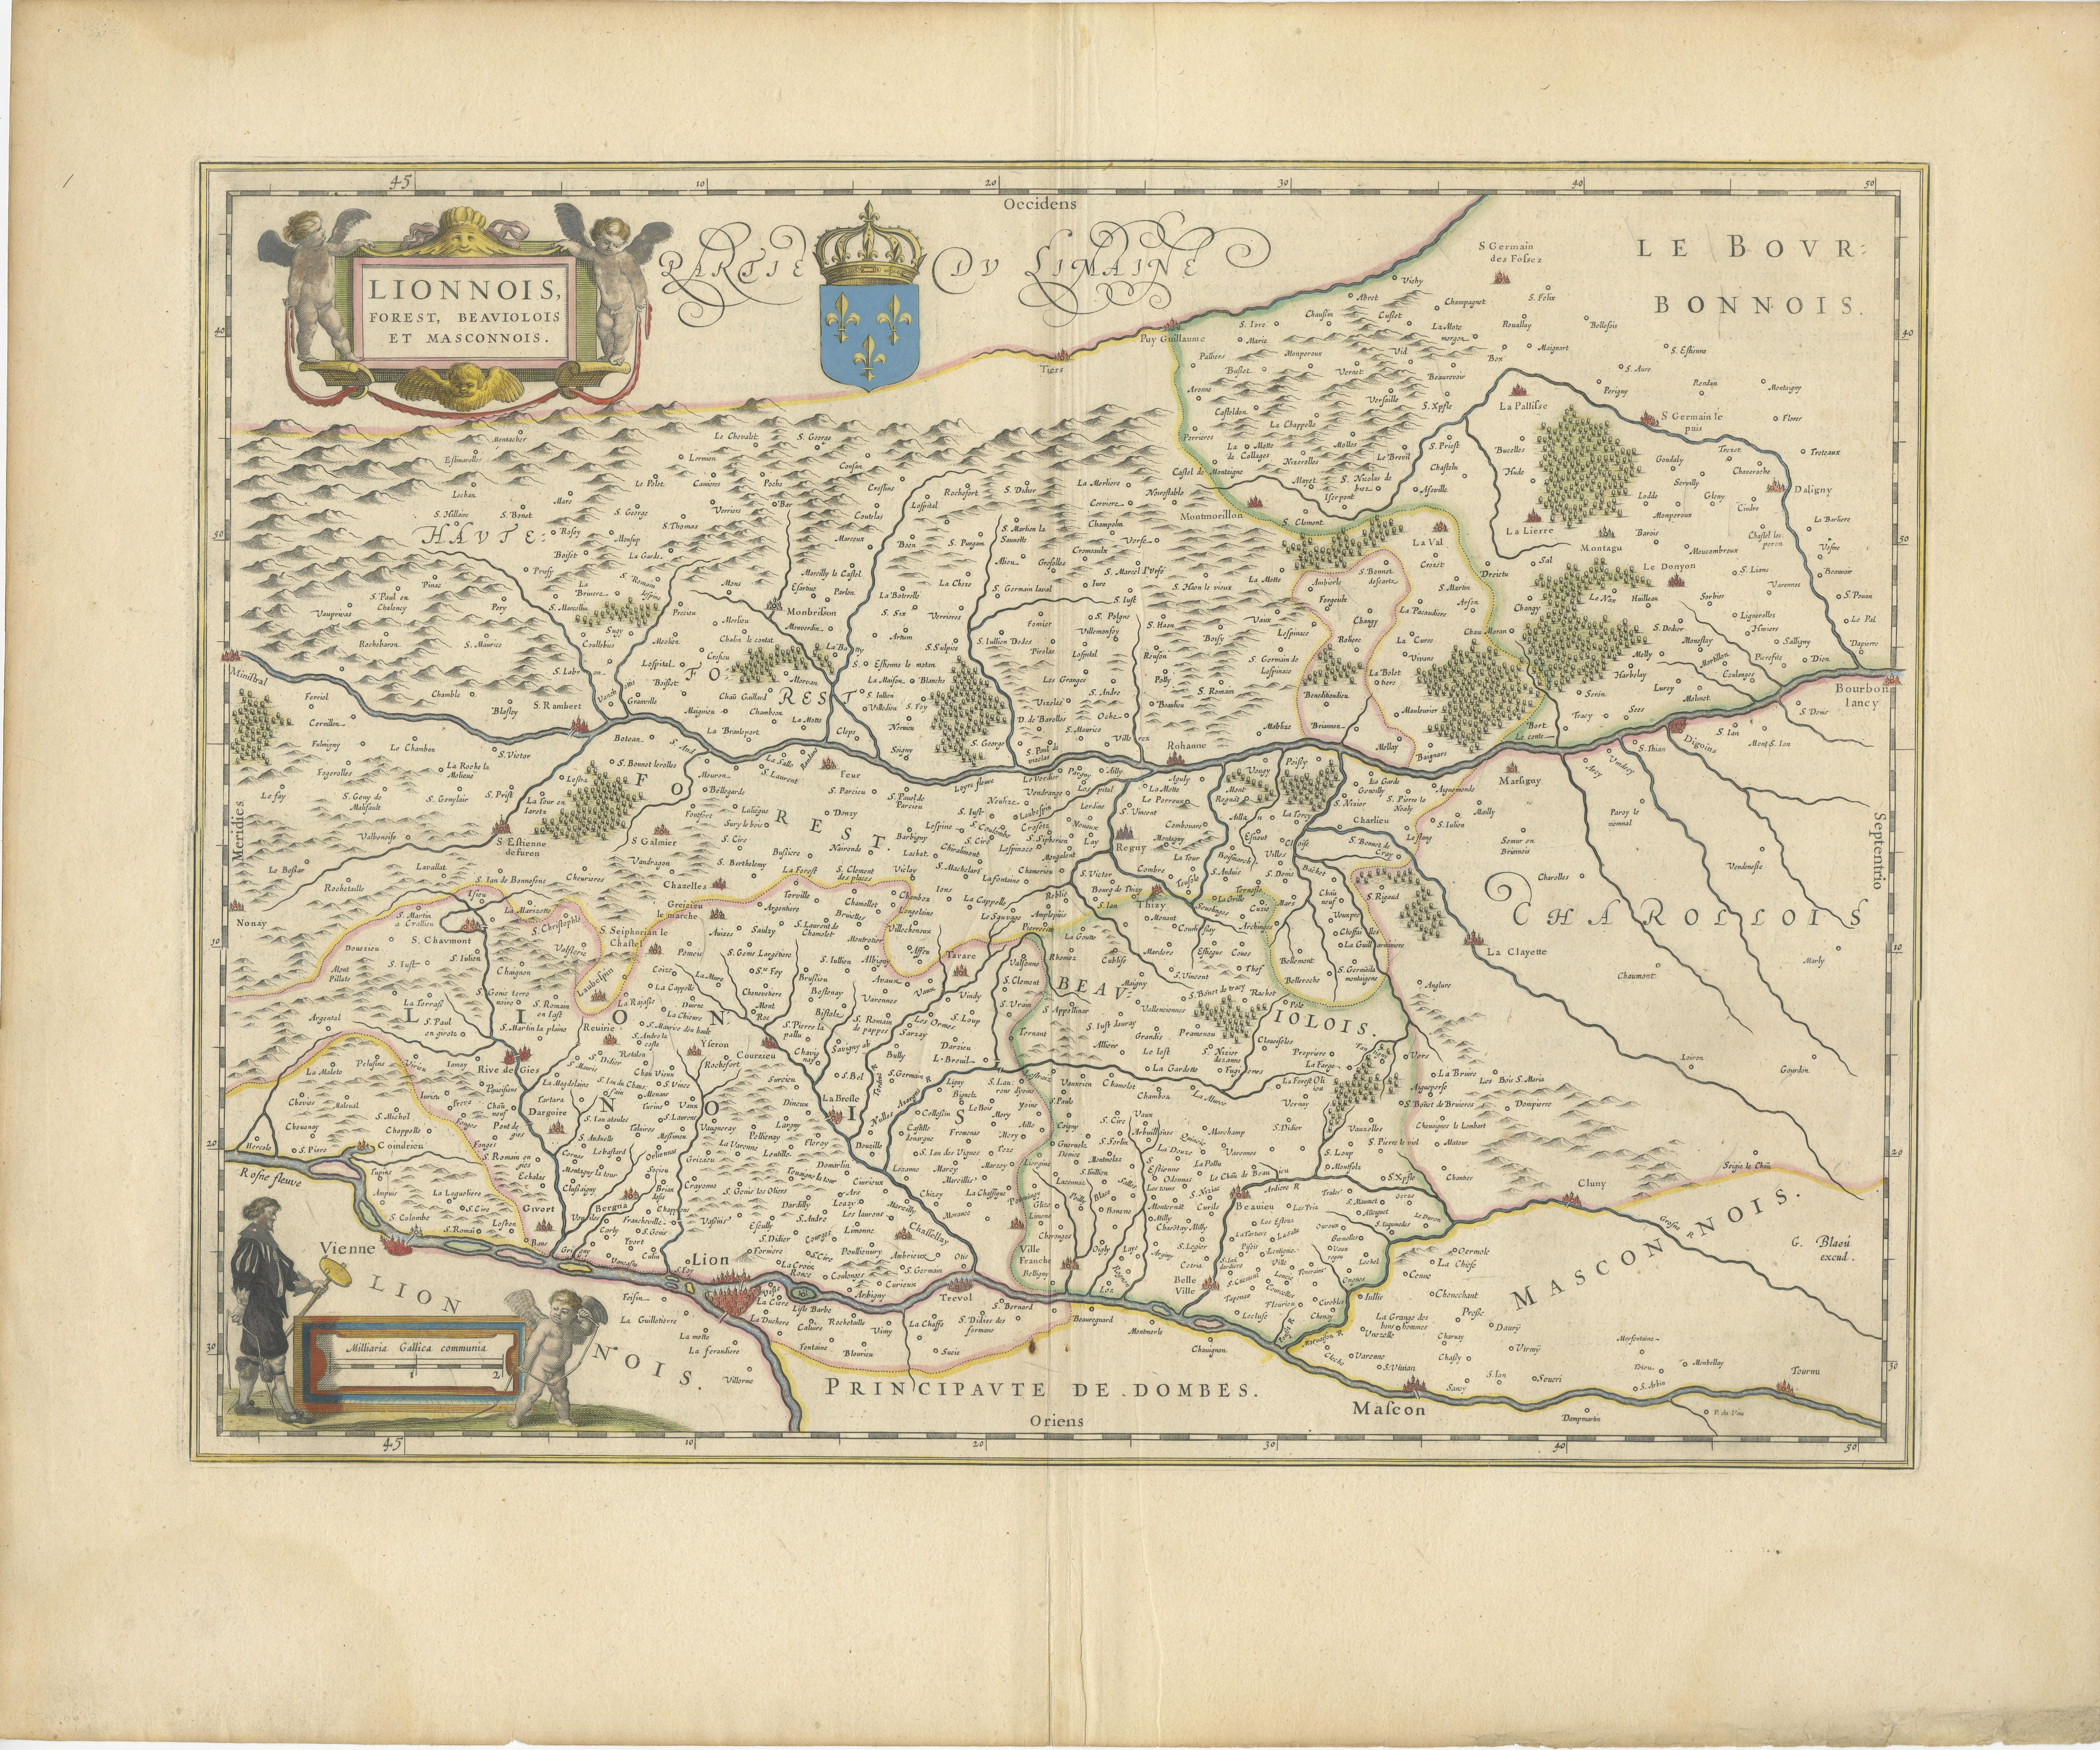 Antike Originalkarte aus dem Jahr 1644, auf der die französischen Provinzen Lyonnais, Beaujolais, Forez und Mâconnais abgebildet sind. In dieser Karte ist Norden nach rechts ausgerichtet, eine kartografische Konvention, die heute nicht mehr üblich